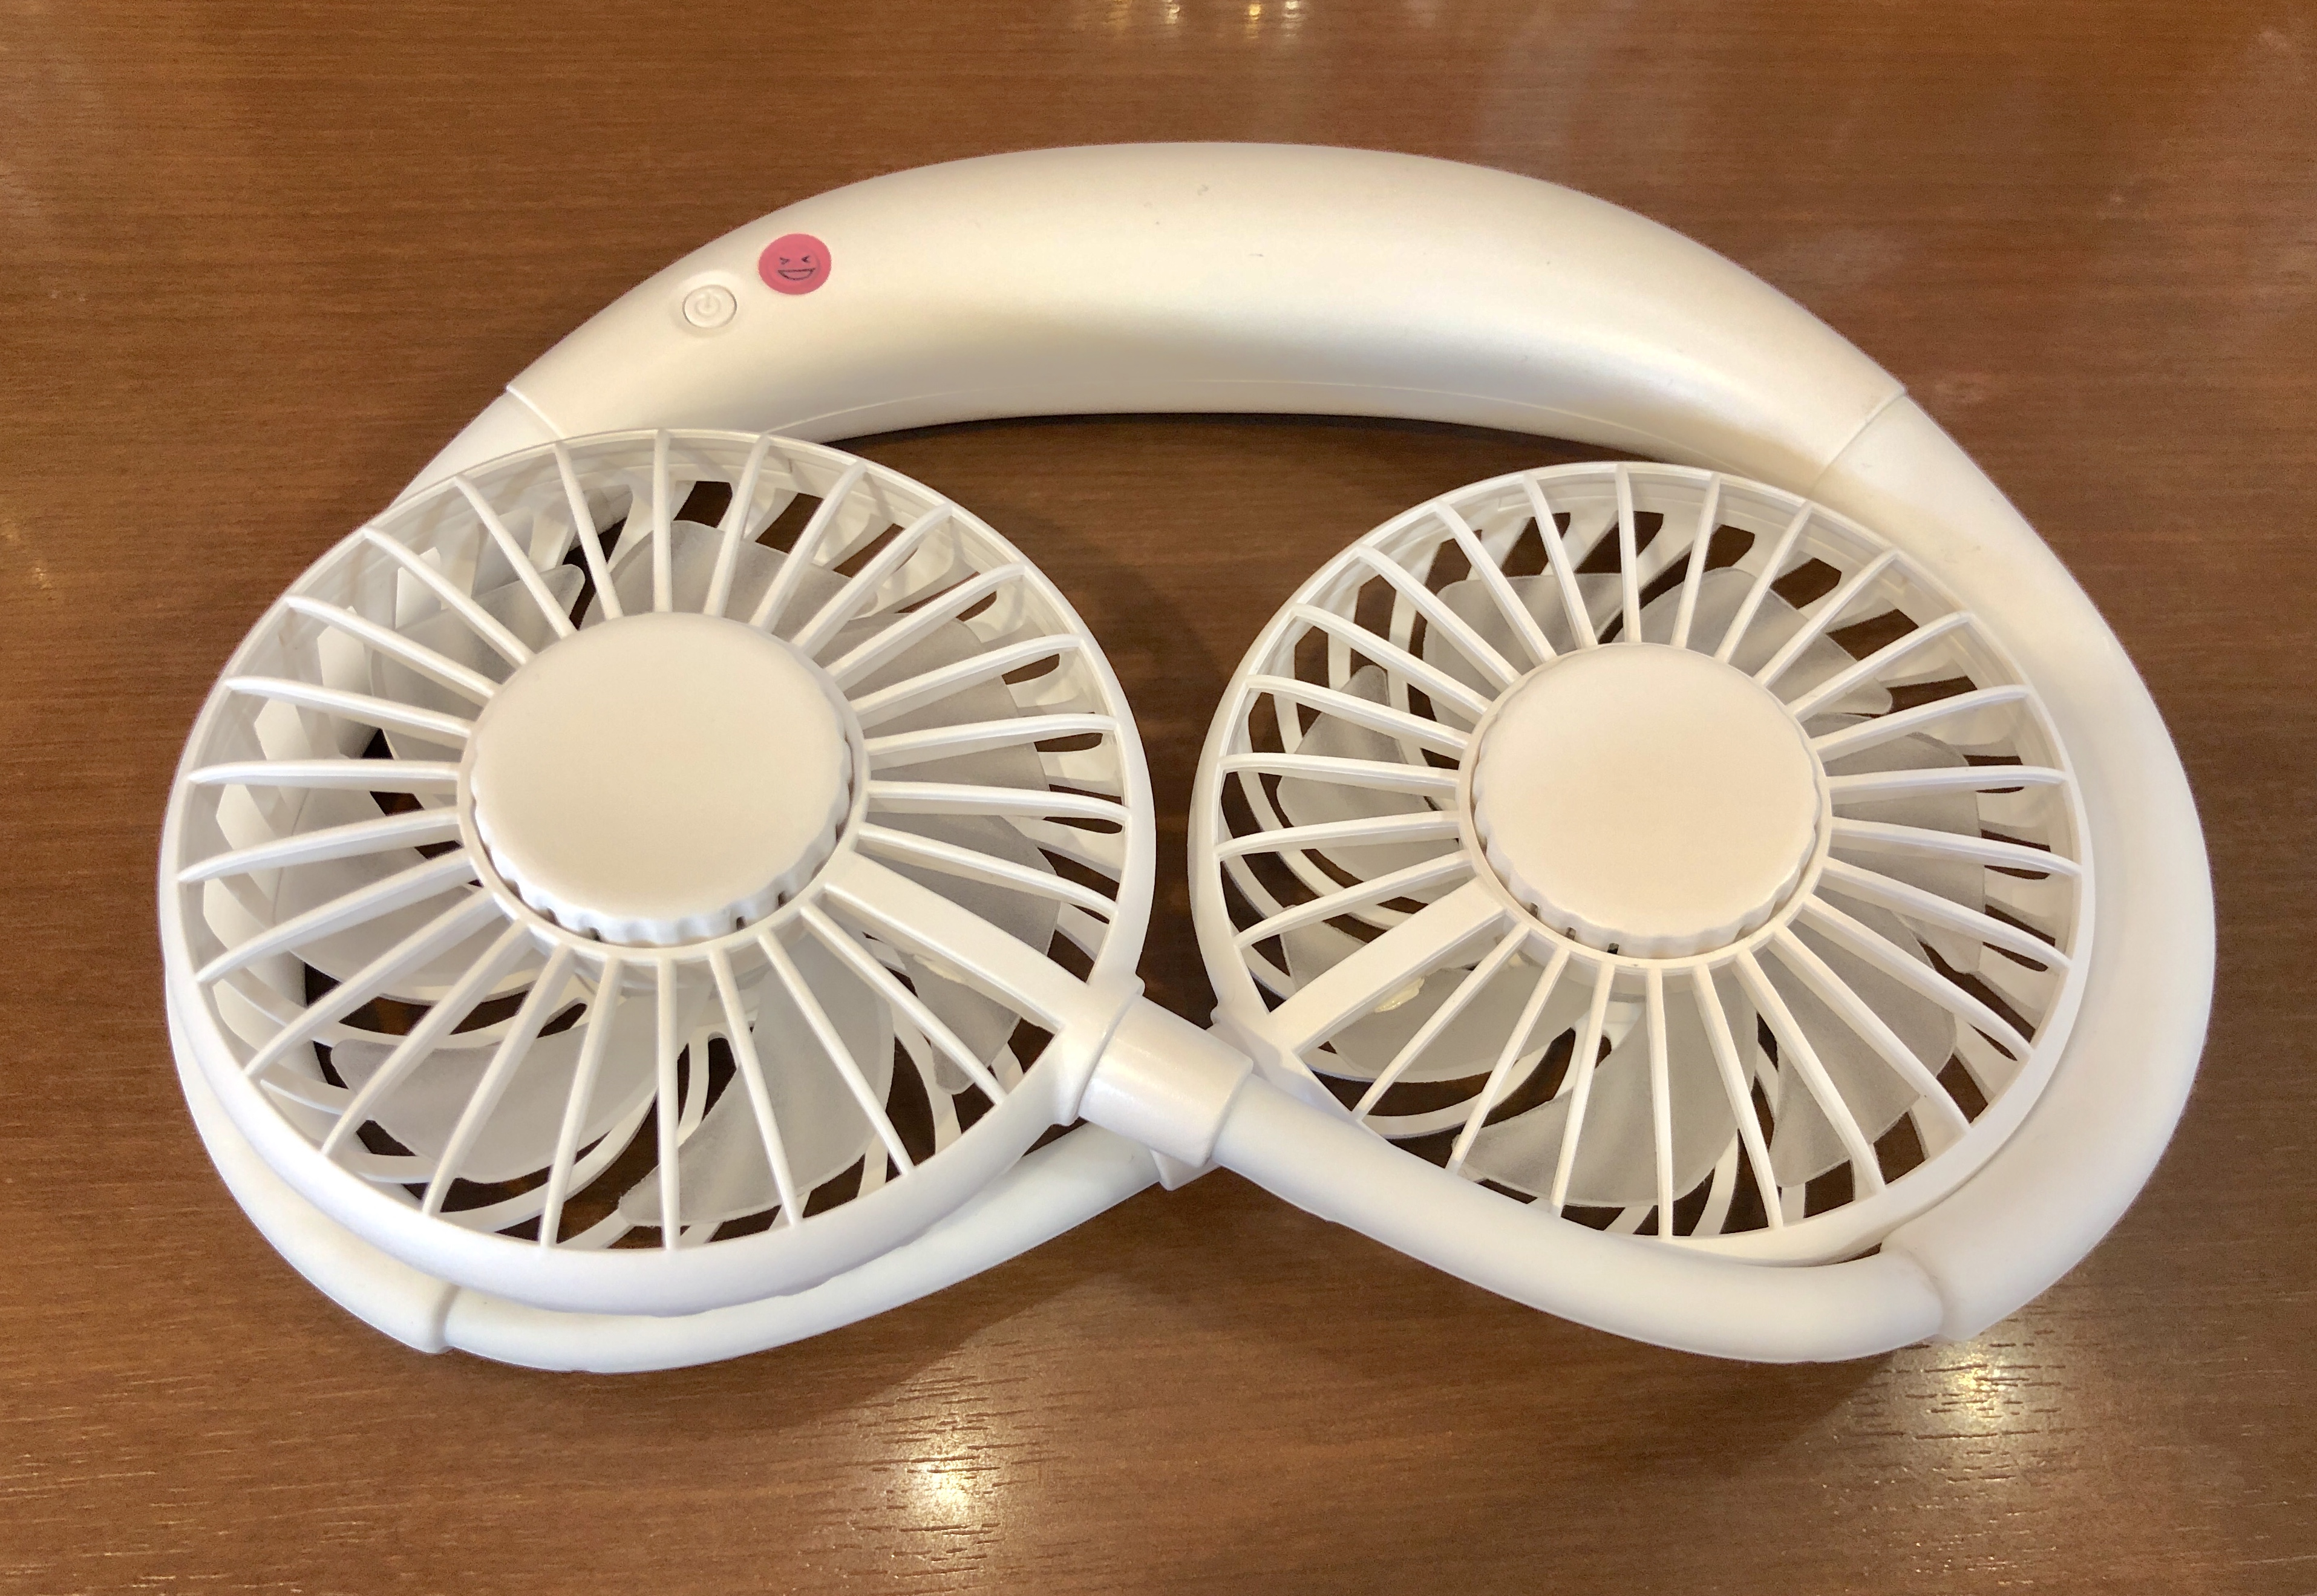 ポケモンgo 暑さ 熱中症対策 小型扇風機 ハンディファン の最適解は7枚羽根の首掛けでした かほブログ